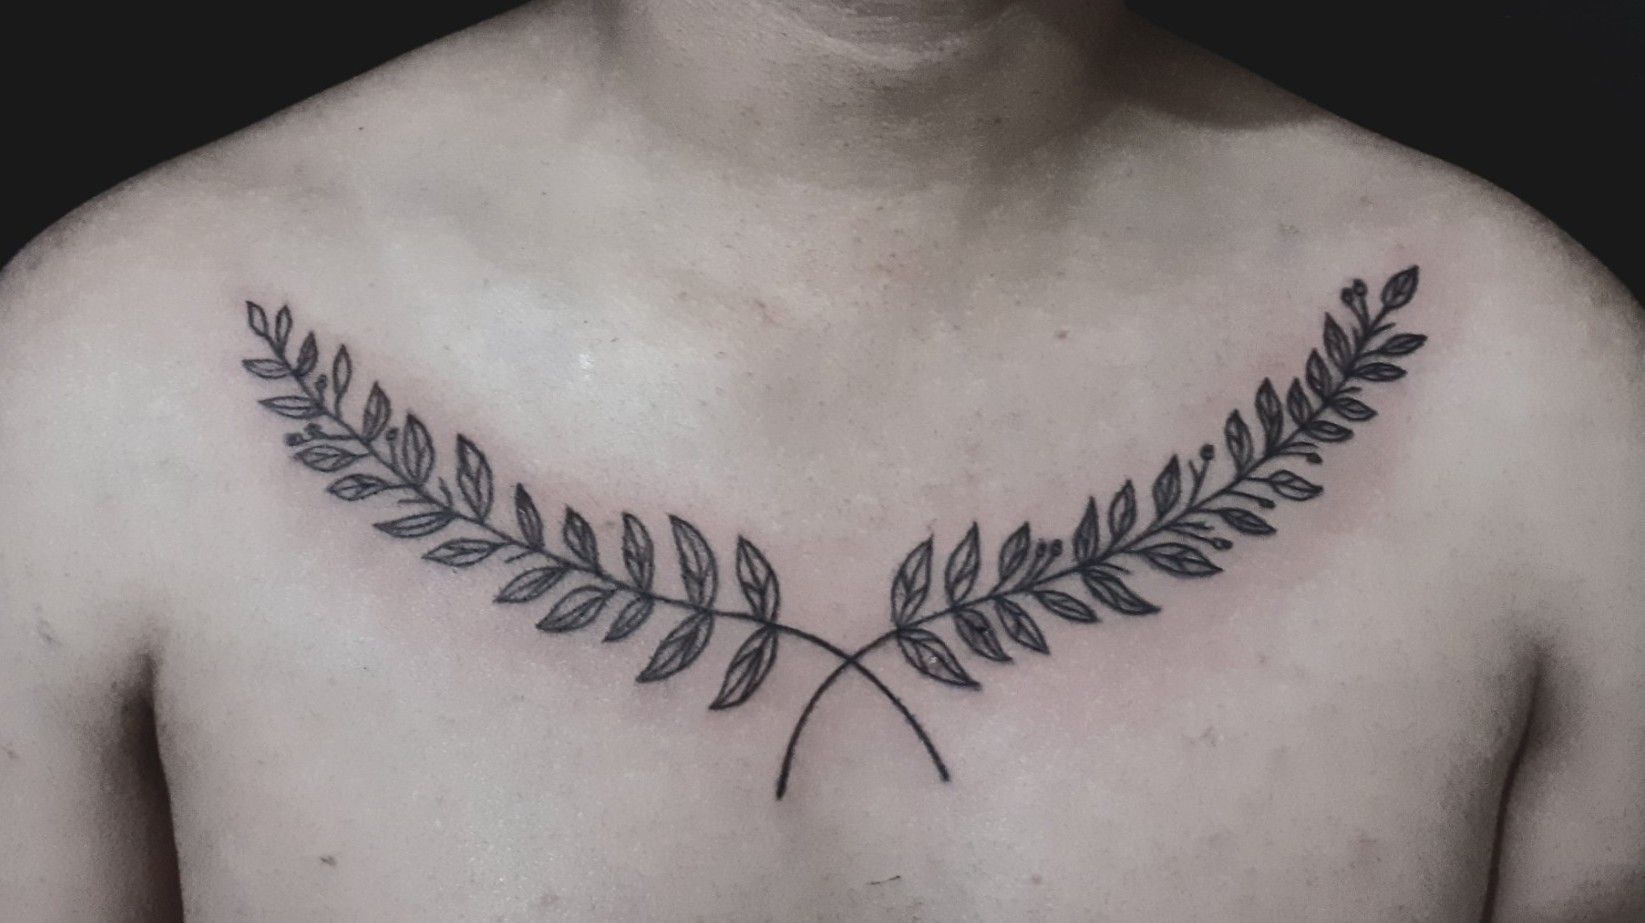 Bay leaf tattoo Nature tattoo plant tattoo black tattoo Martha Bocharova  marthabocharova on Instagram tattooblackta  Nature tattoos Plant  tattoo Tattoos